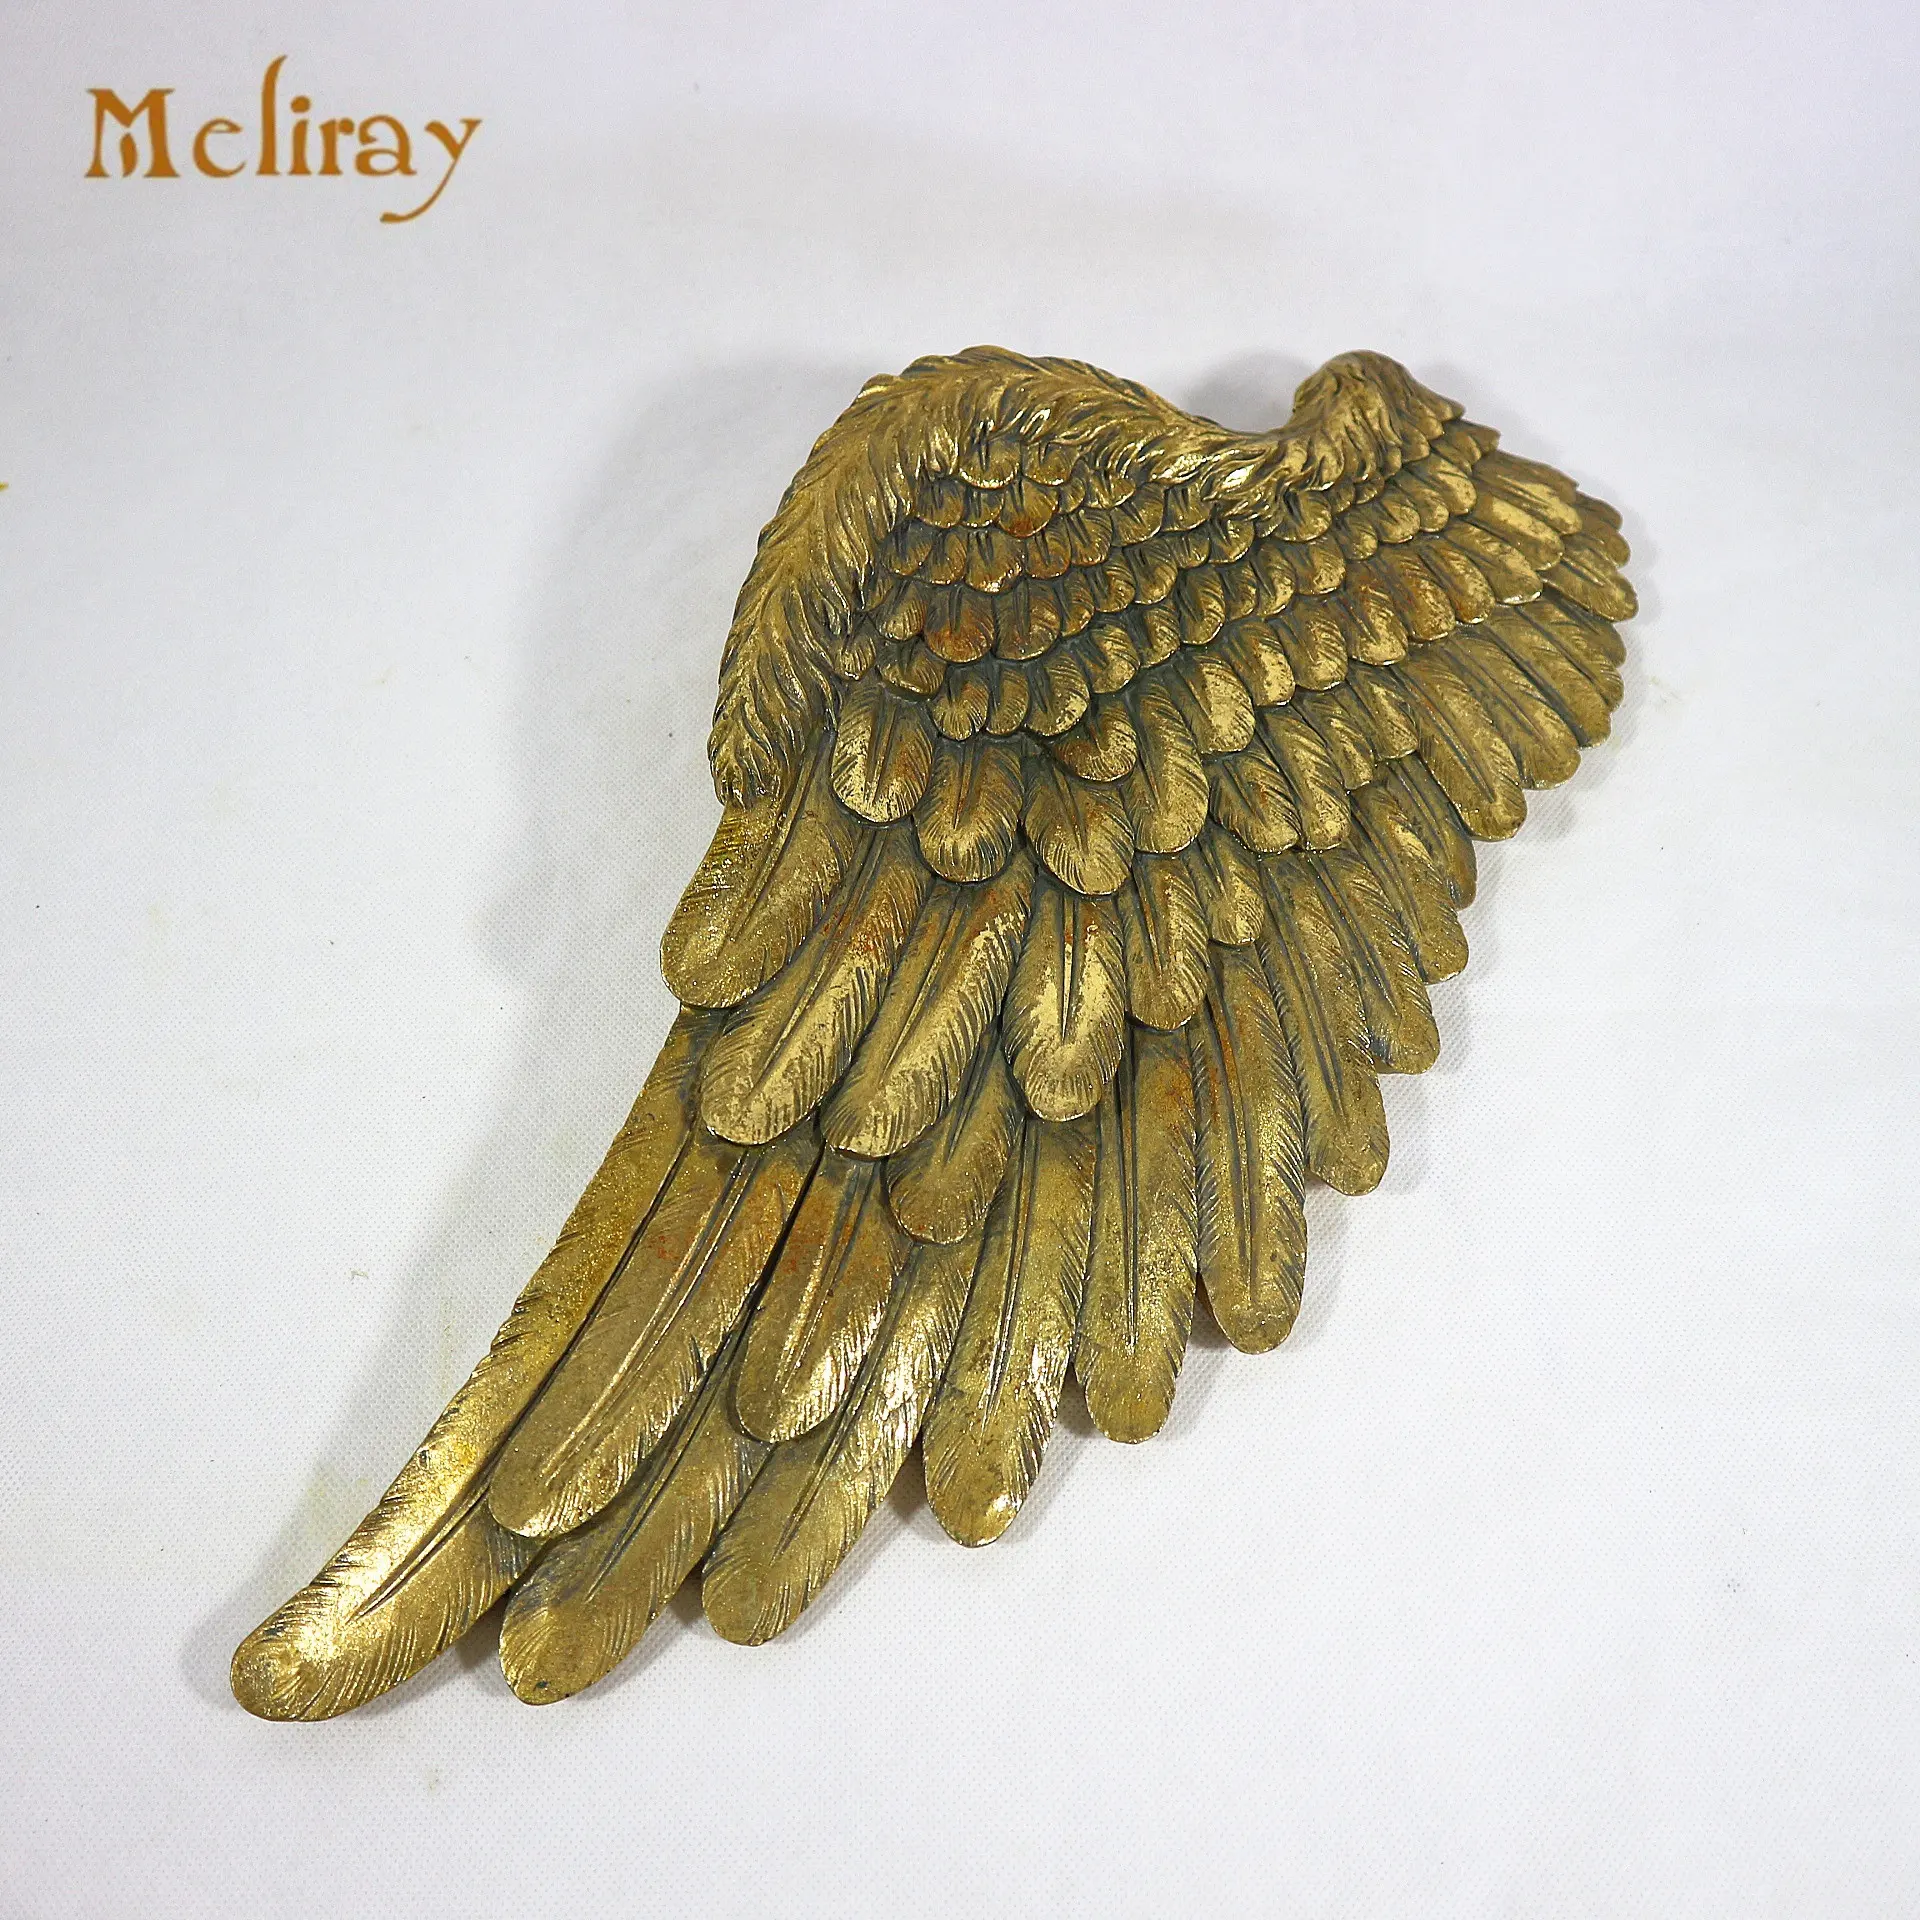 Table murale d'aile d'ange artificielle en résine, artisanat décoratif en métal doré, cadeau unique, décorations pour la maison